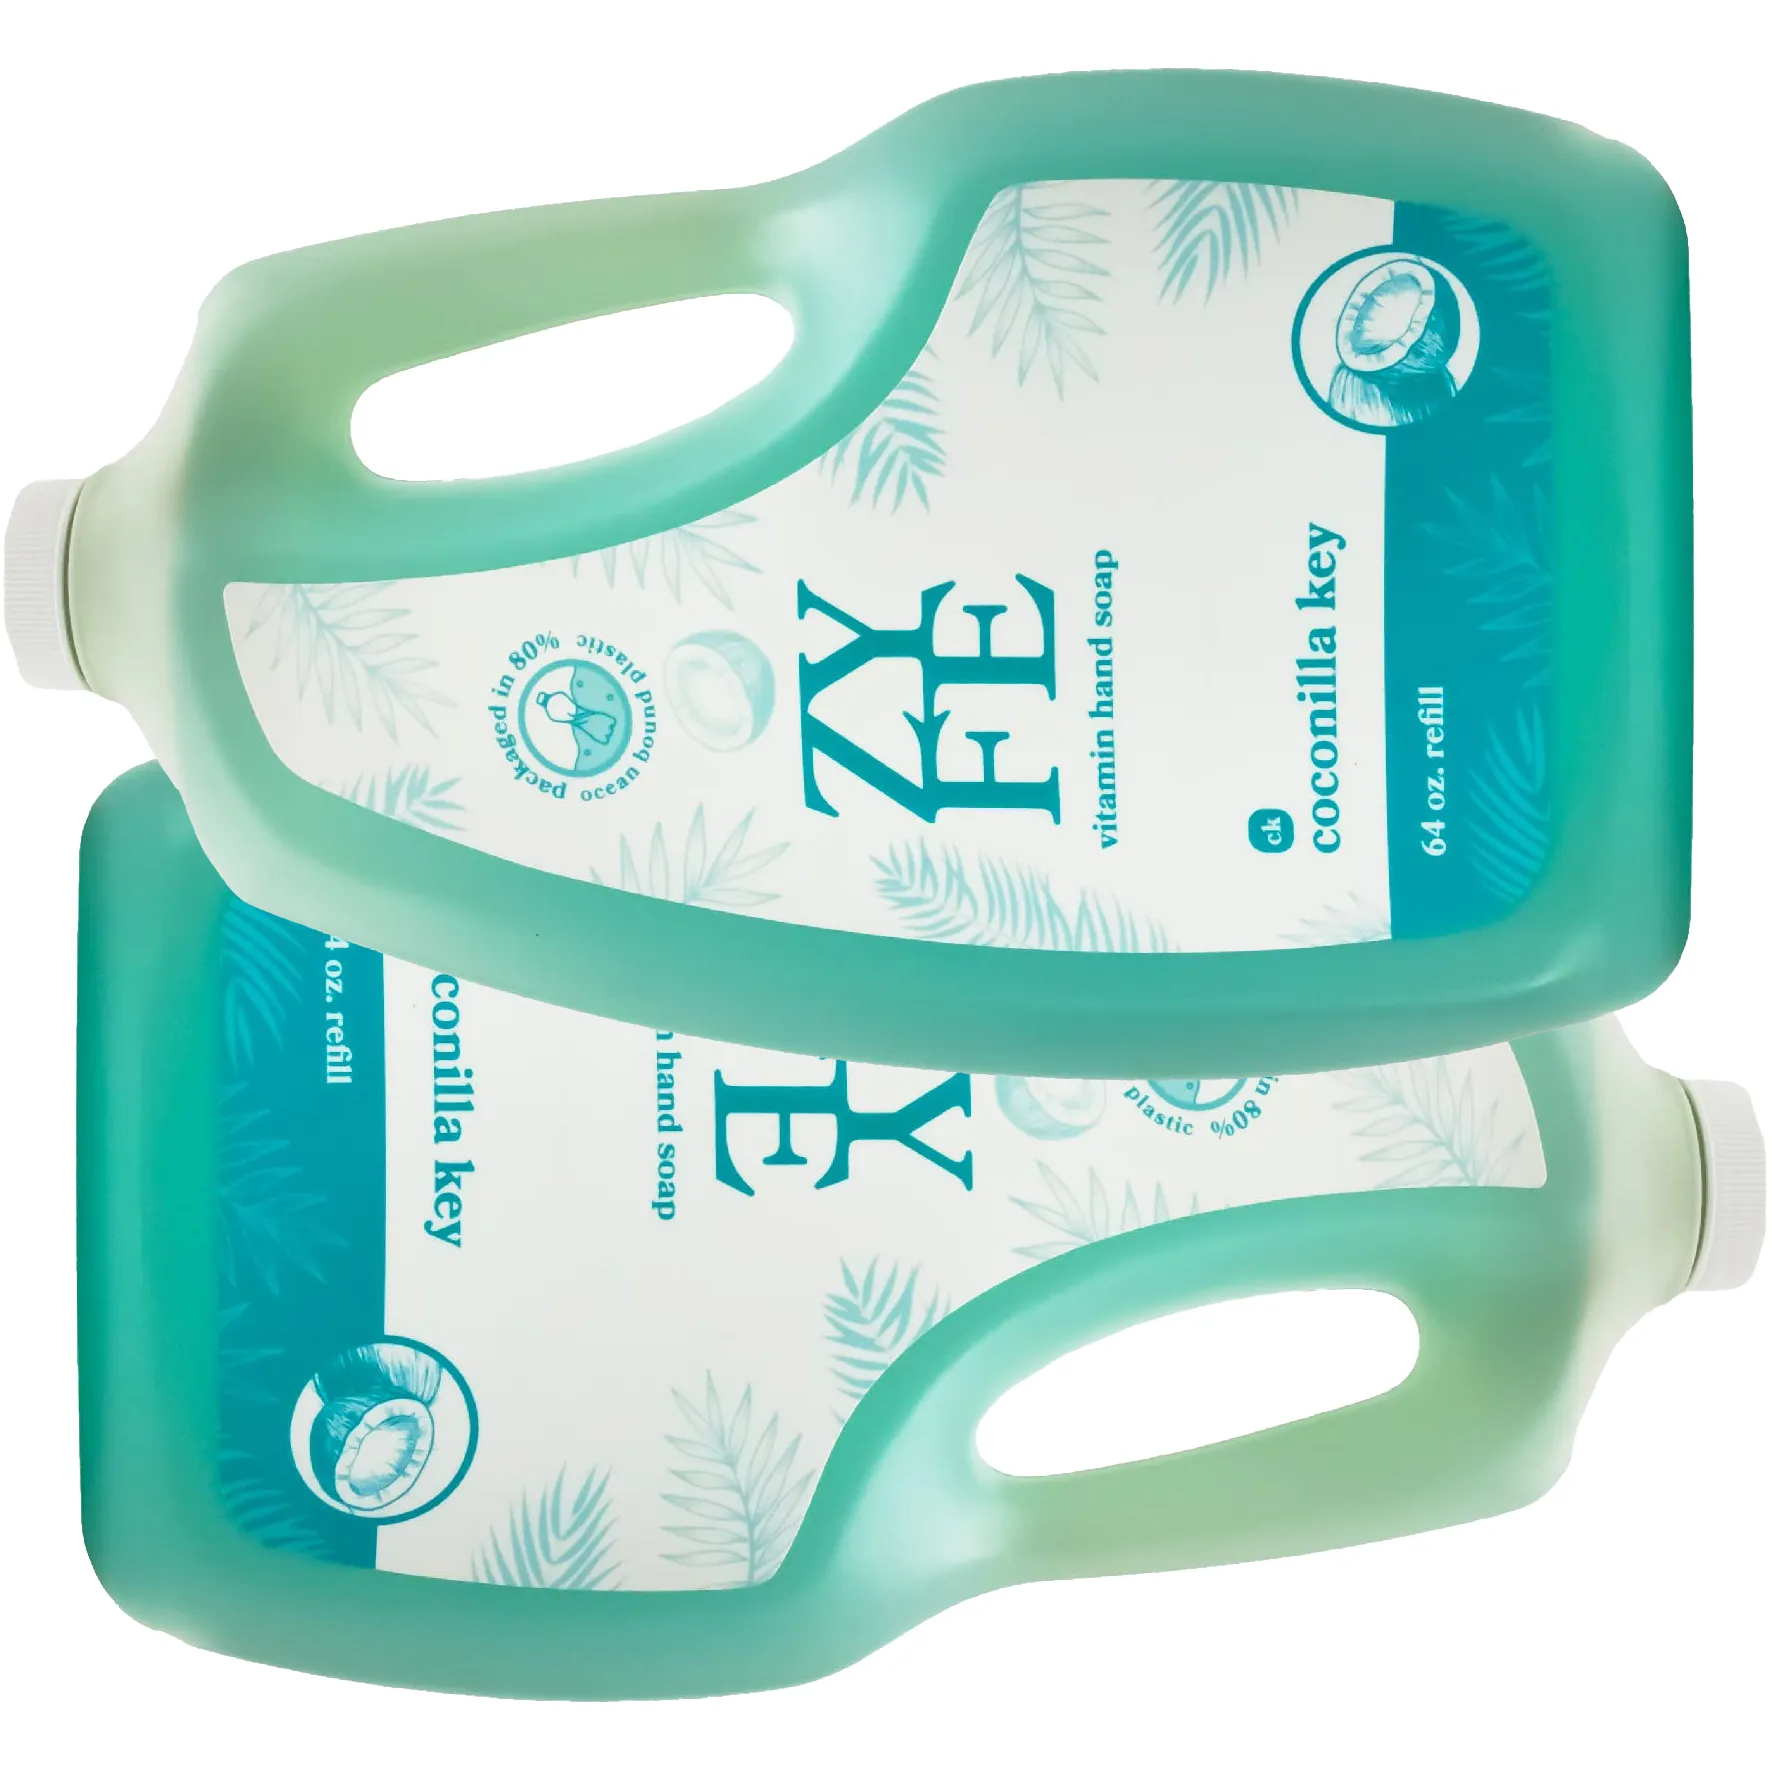 Free Zyfe Vitamin Hand Soap